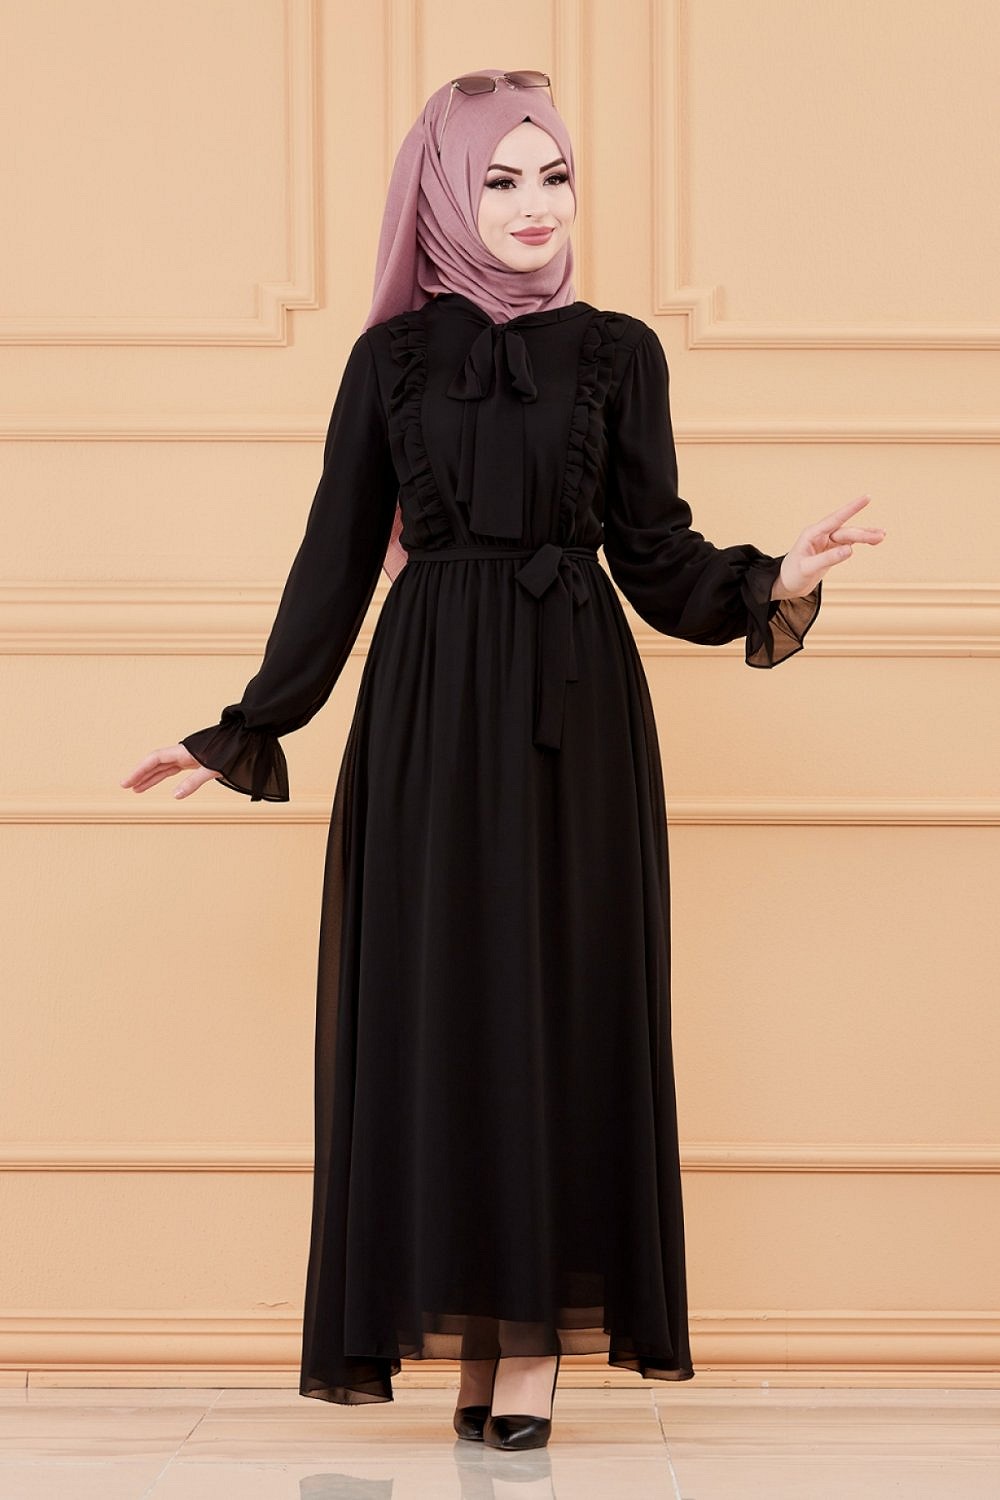 Robe de soirée pour femme (Tenue style chic pour hijab) - Couleur noir